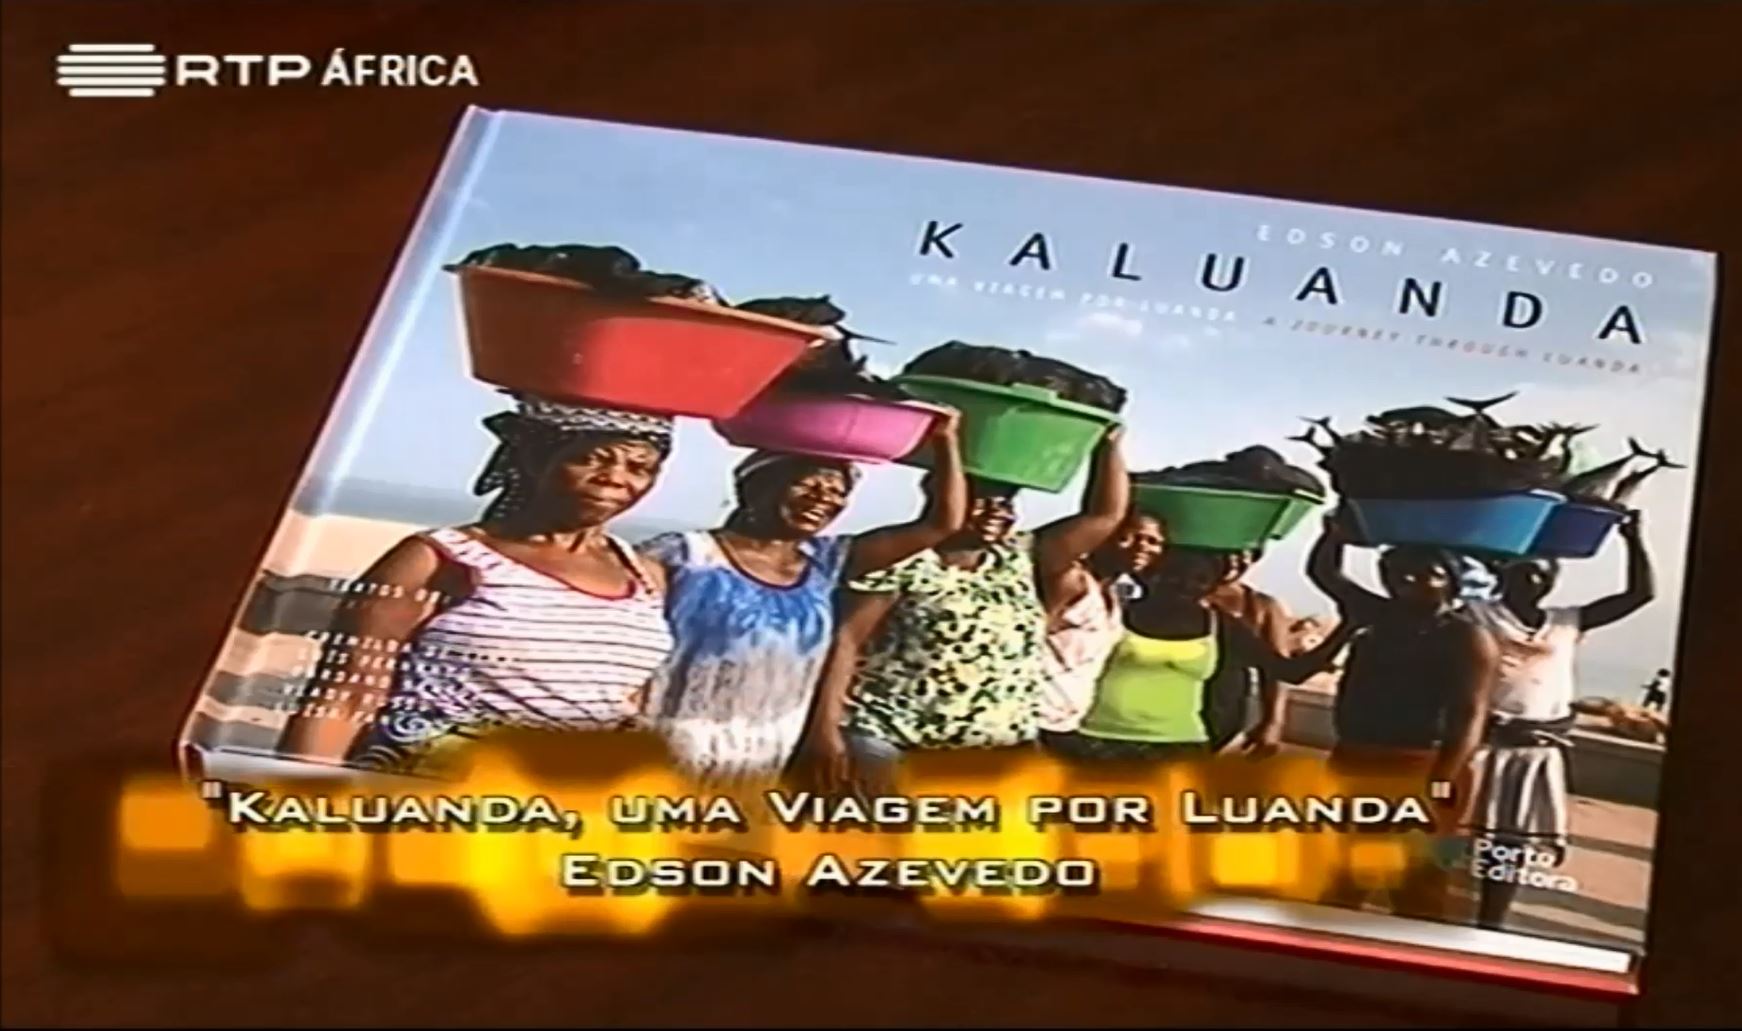 Kaluanda | Livro de Fotografias de Luanda Angola by Edson Azevedo